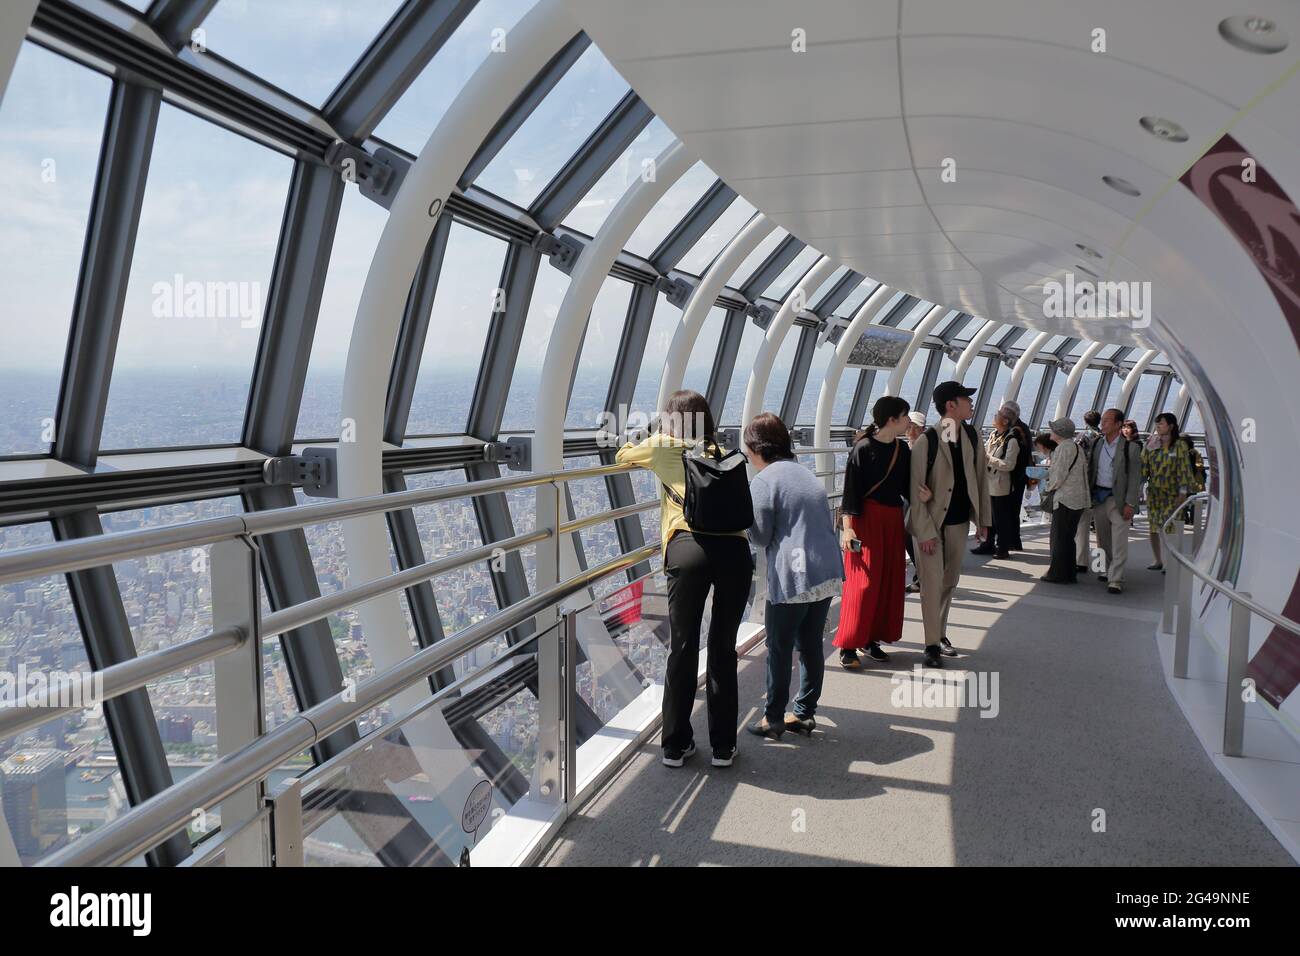 Das Innere der TOKIOTER TEMBO GALLERIE. Touristen können die geneigte gallerie vom 445. Bis 450. Stock zu Fuß erreichen und das großartige Stadtbild in Tokio genießen Stockfoto